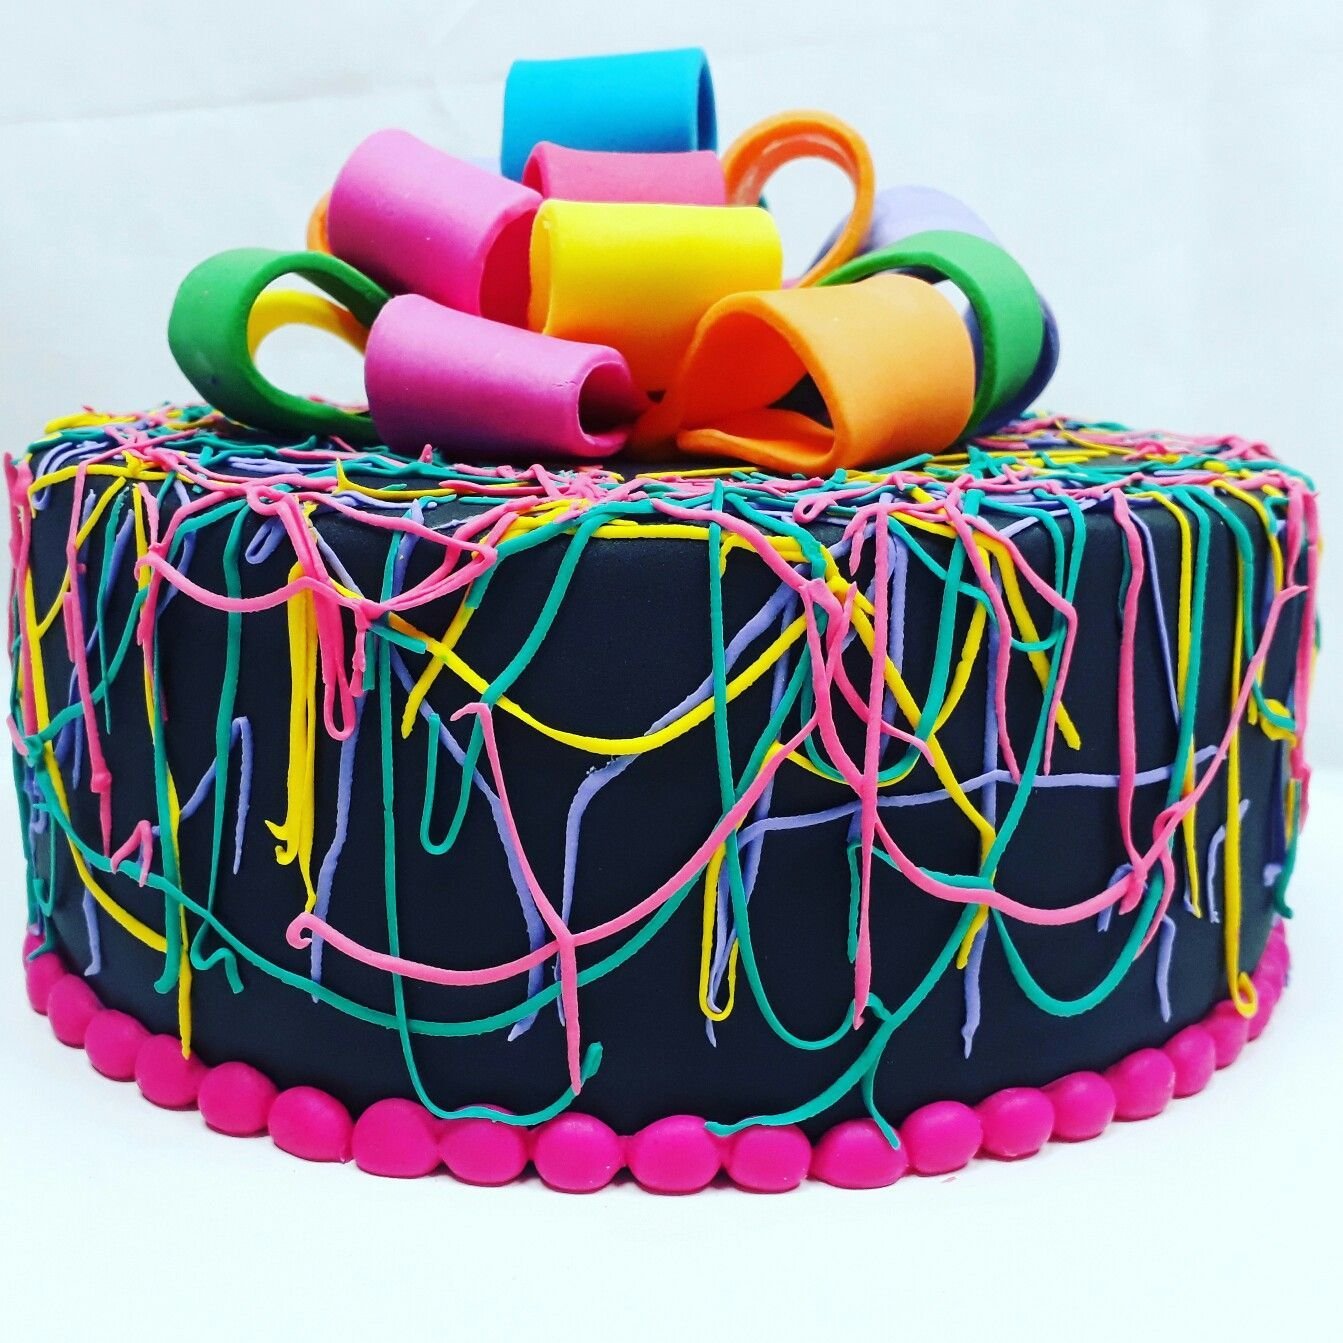 Неоновый торт. Неоновый декор торта. Торт на неоновую вечеринку. Торт в стиле неоновой вечеринки. Торт неоновый на день рождения.